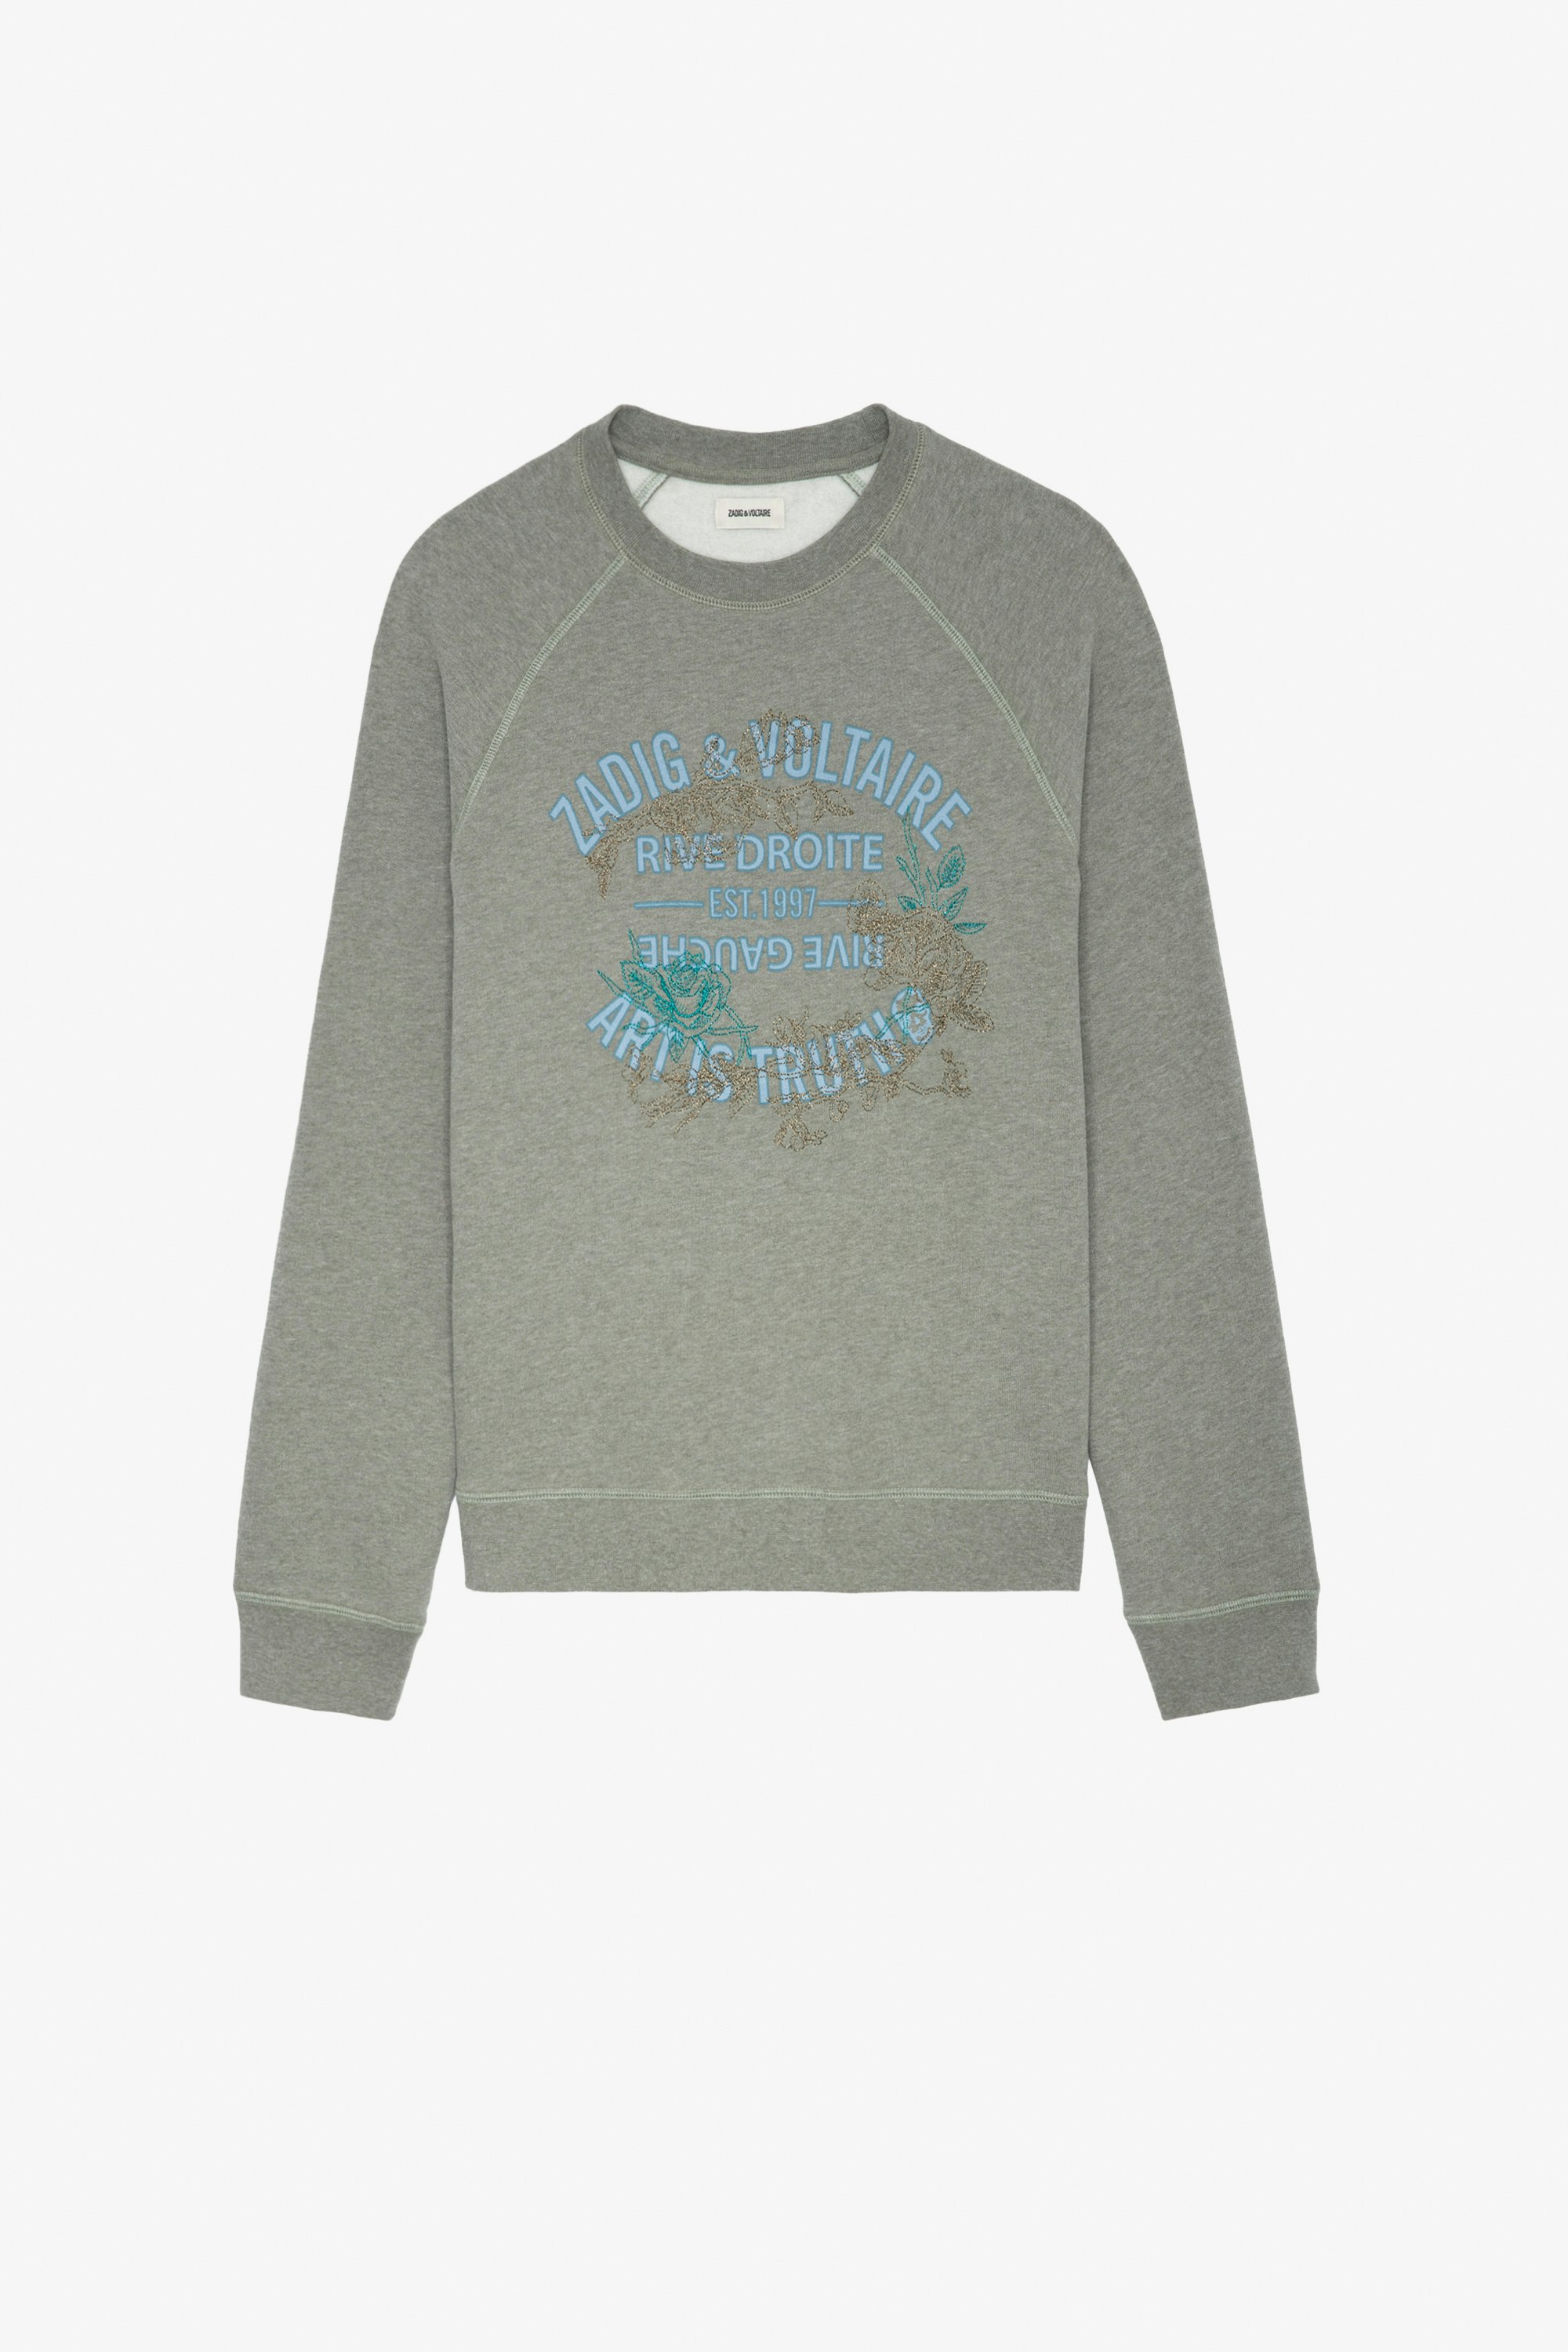 Upper Blason Flowers Sweatshirt - Women's grey sweatshirt with Zadig & Voltaire print on front.